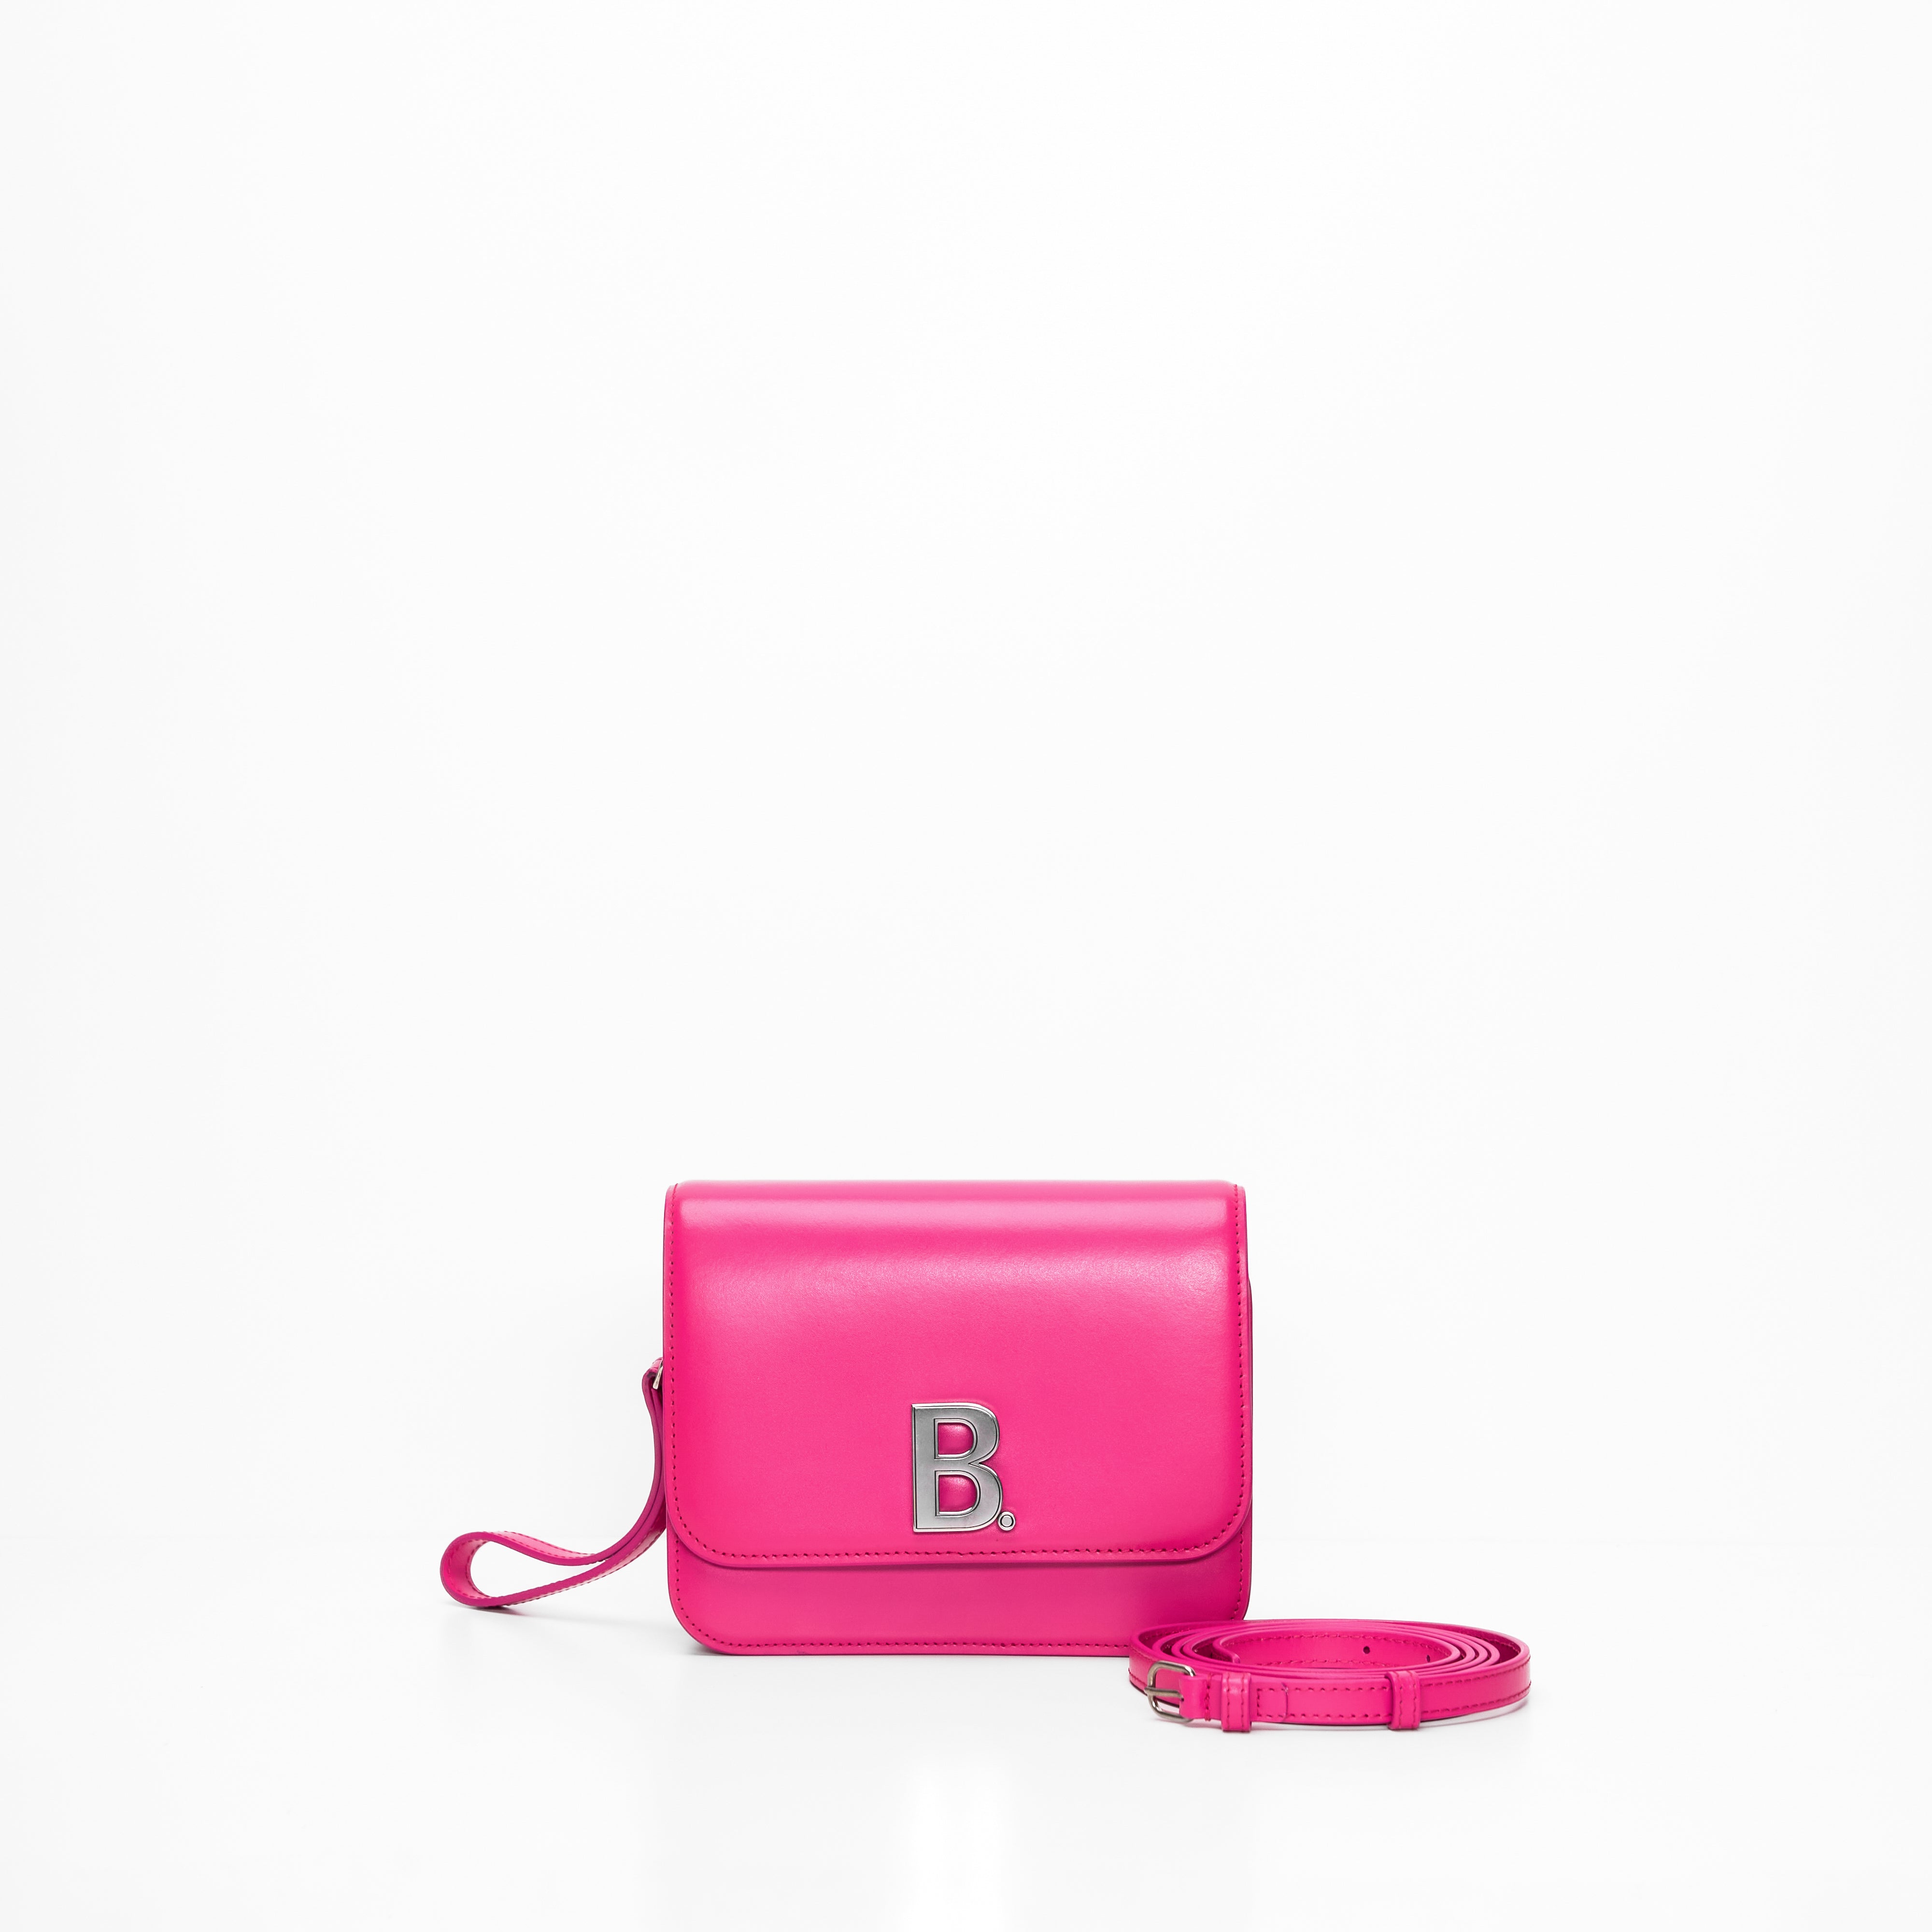 Balenciaga B Dot Bag in Pink